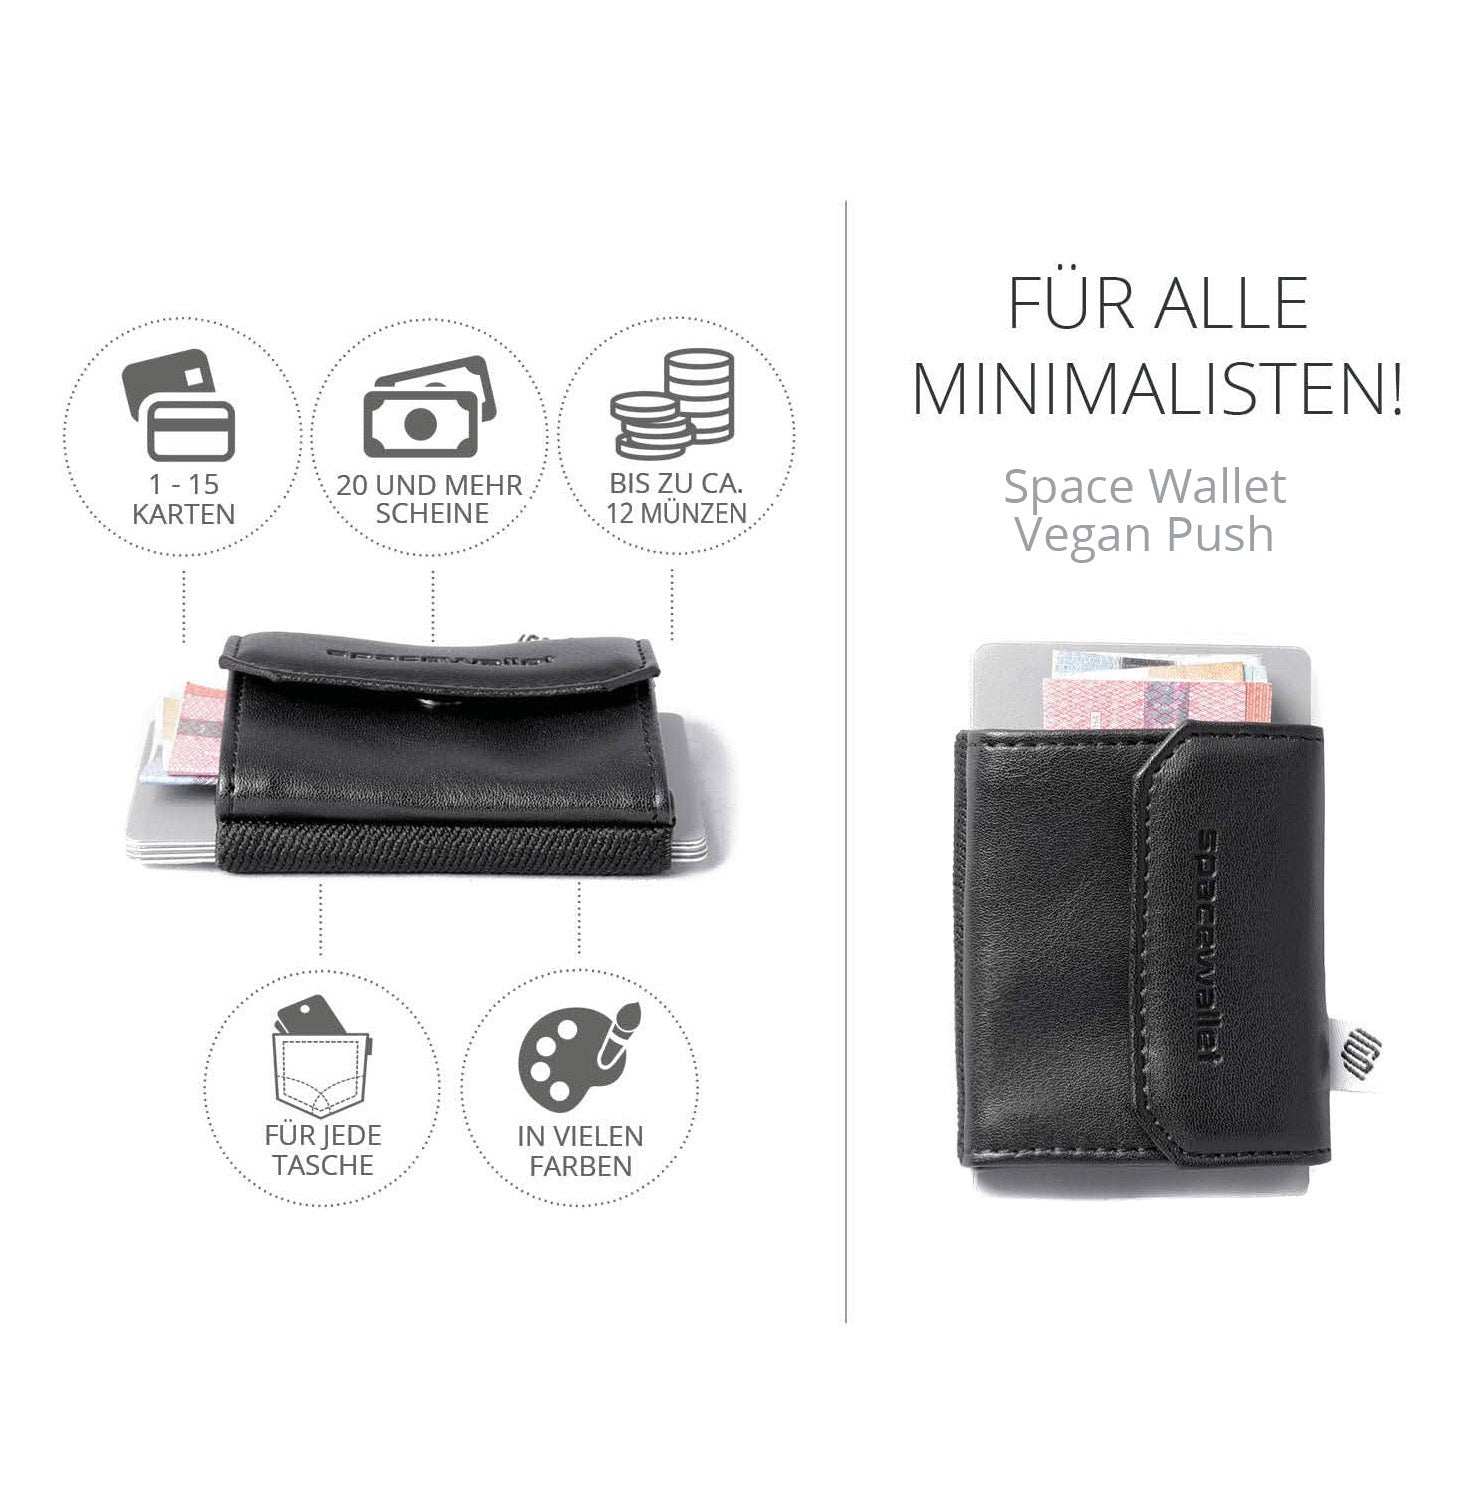 Space Wallet Vegan Push - veganes Slim Wallet mit Münzfach